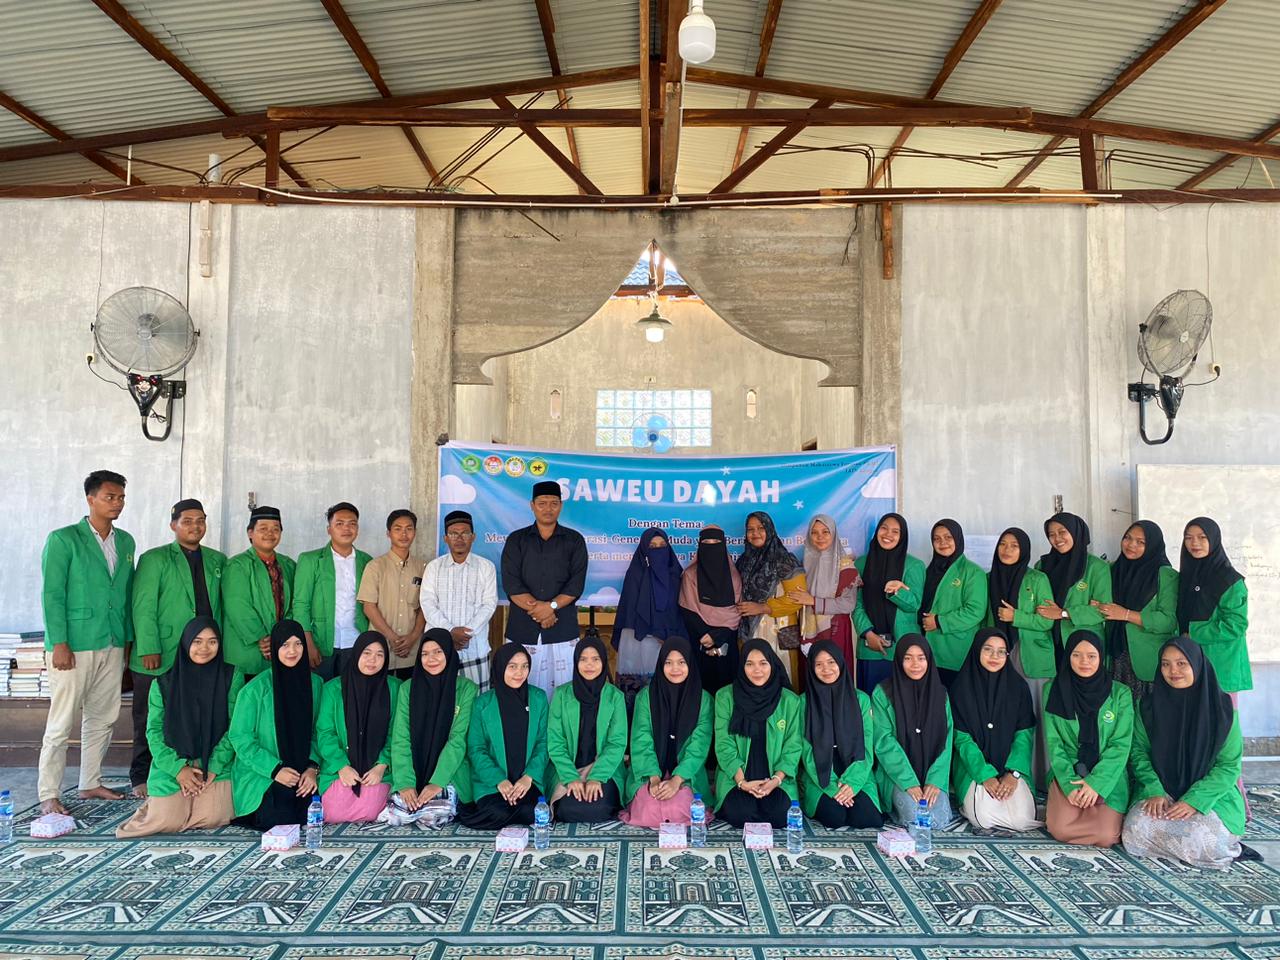 HMJ Pendidikan Guru Madrasah Ibtidaiyah PGMI menggelar Saweu Dayah